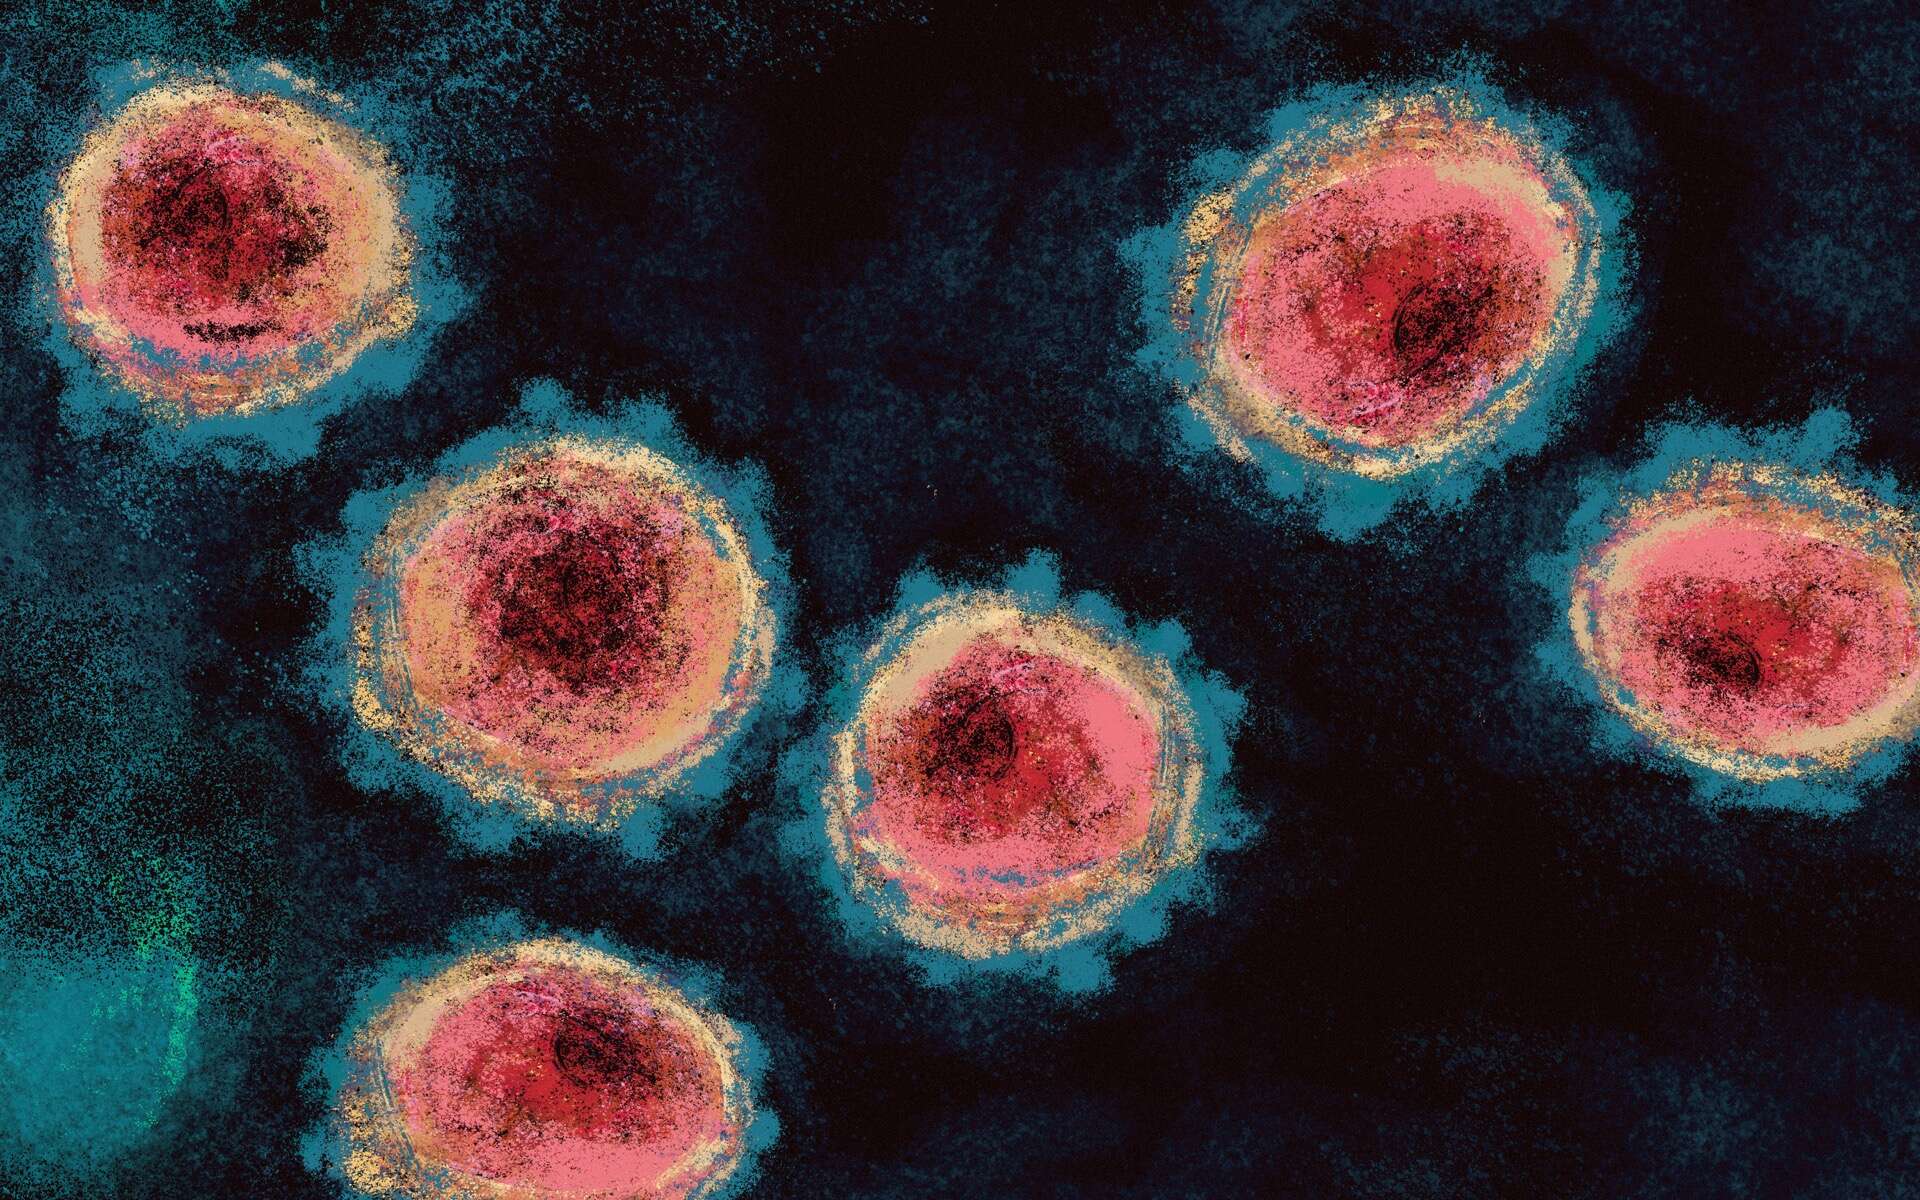 Le coronavirus modifie les cellules qu'il infecte en leur faisant pousser des tentacules. © Antonio Rodriguez, Adobe Stock